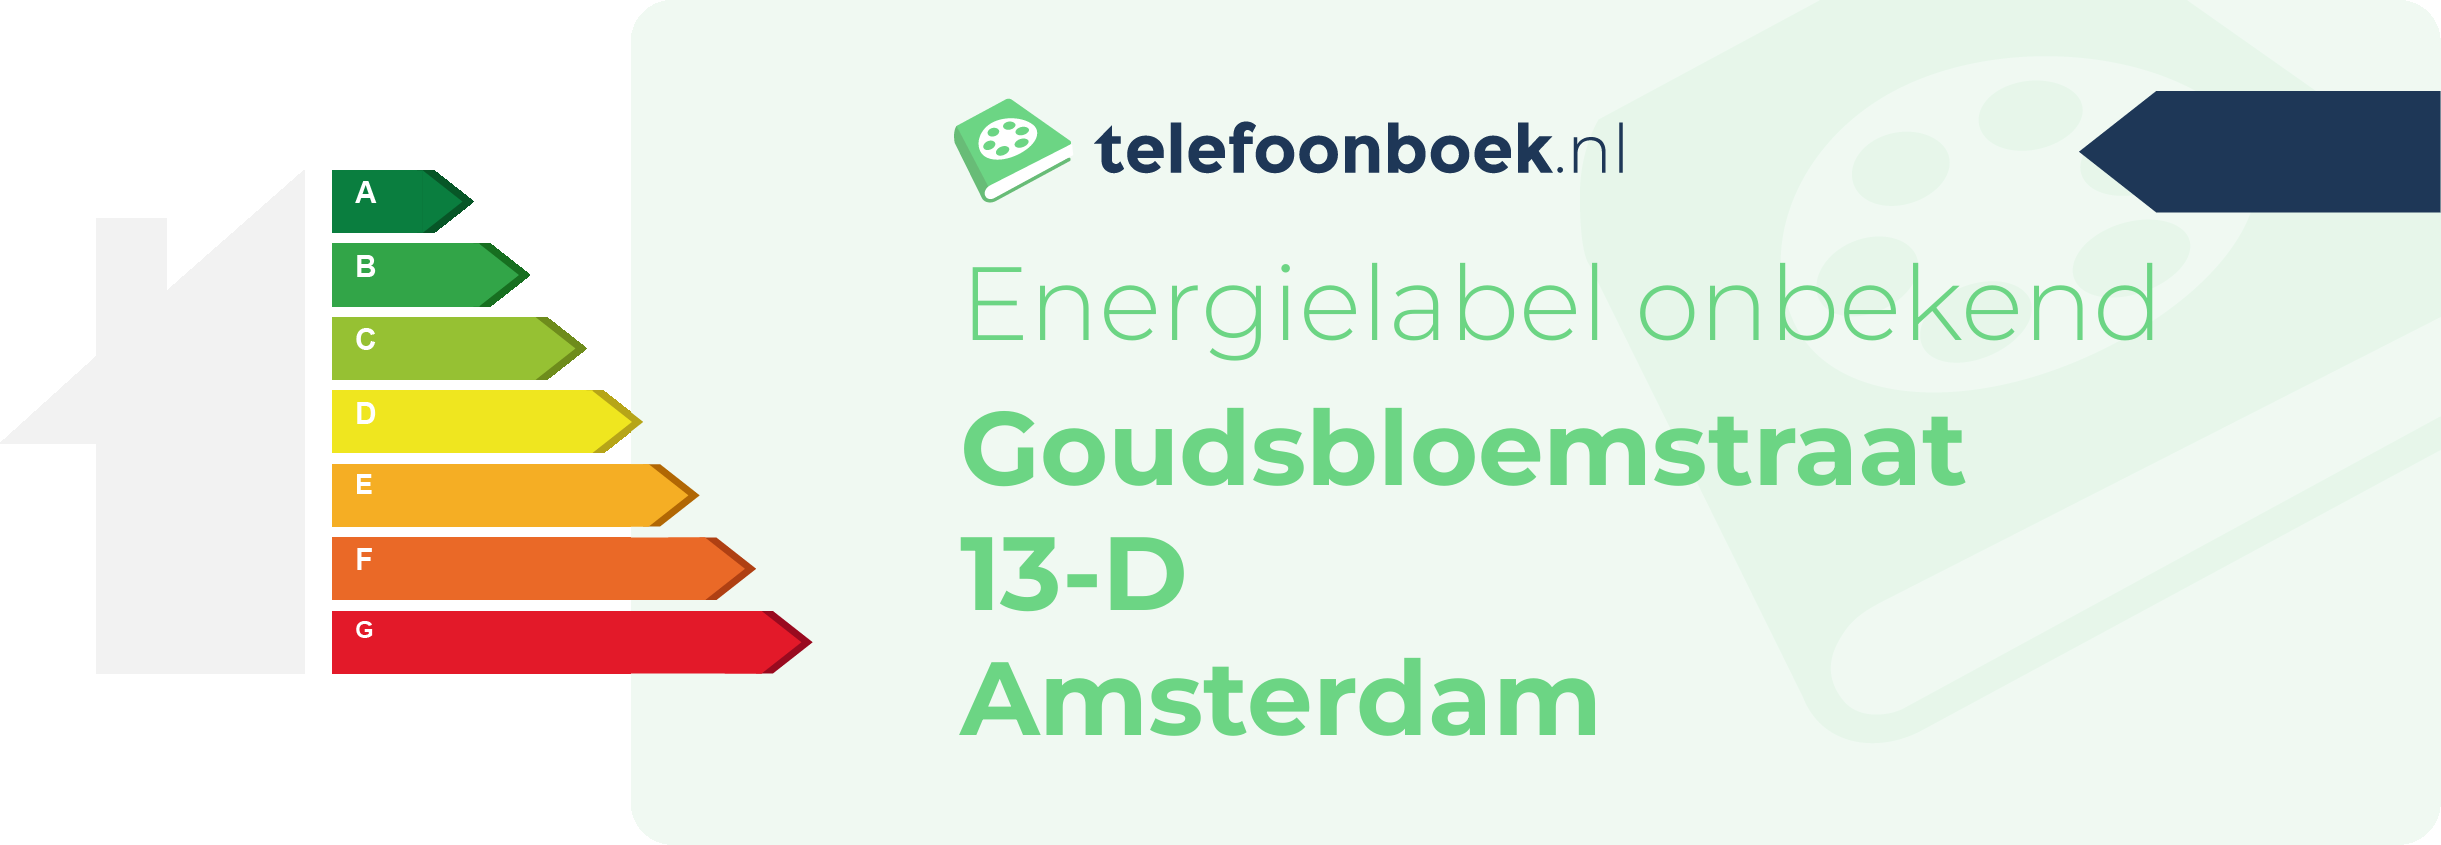 Energielabel Goudsbloemstraat 13-D Amsterdam